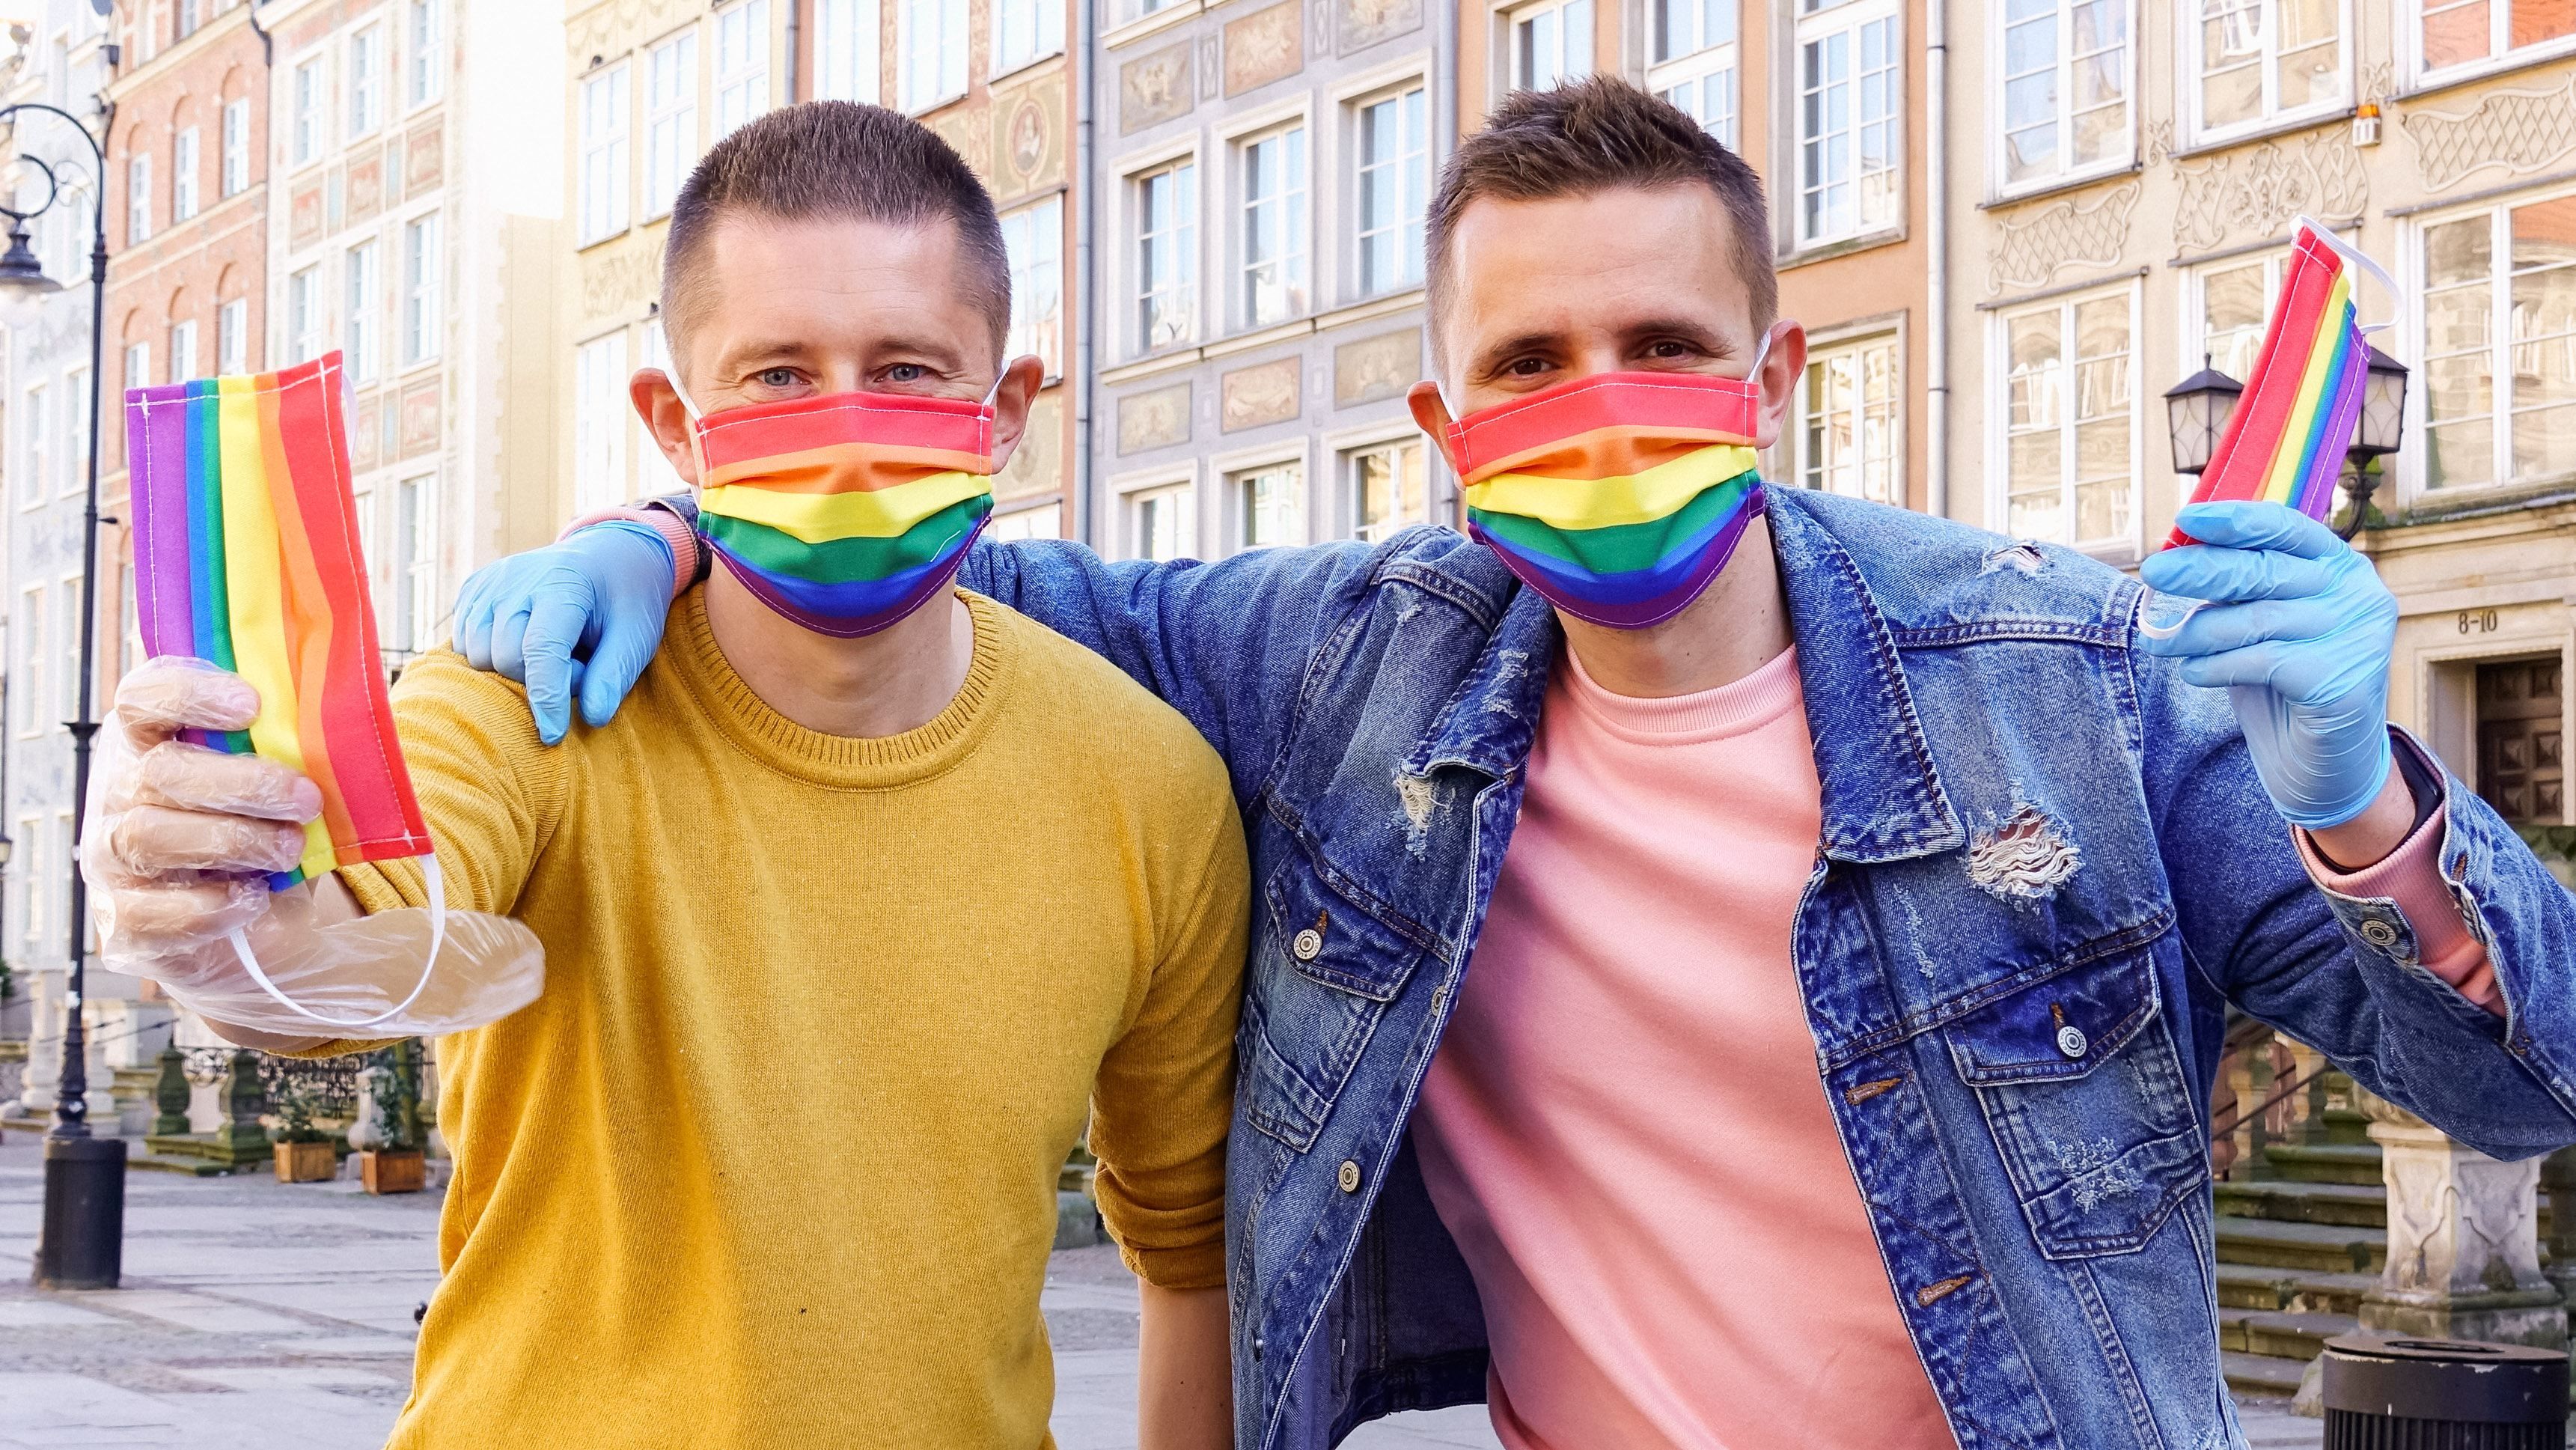 Камень в огород Польши: ЕС официально объявили зоной свободы ЛГБТ